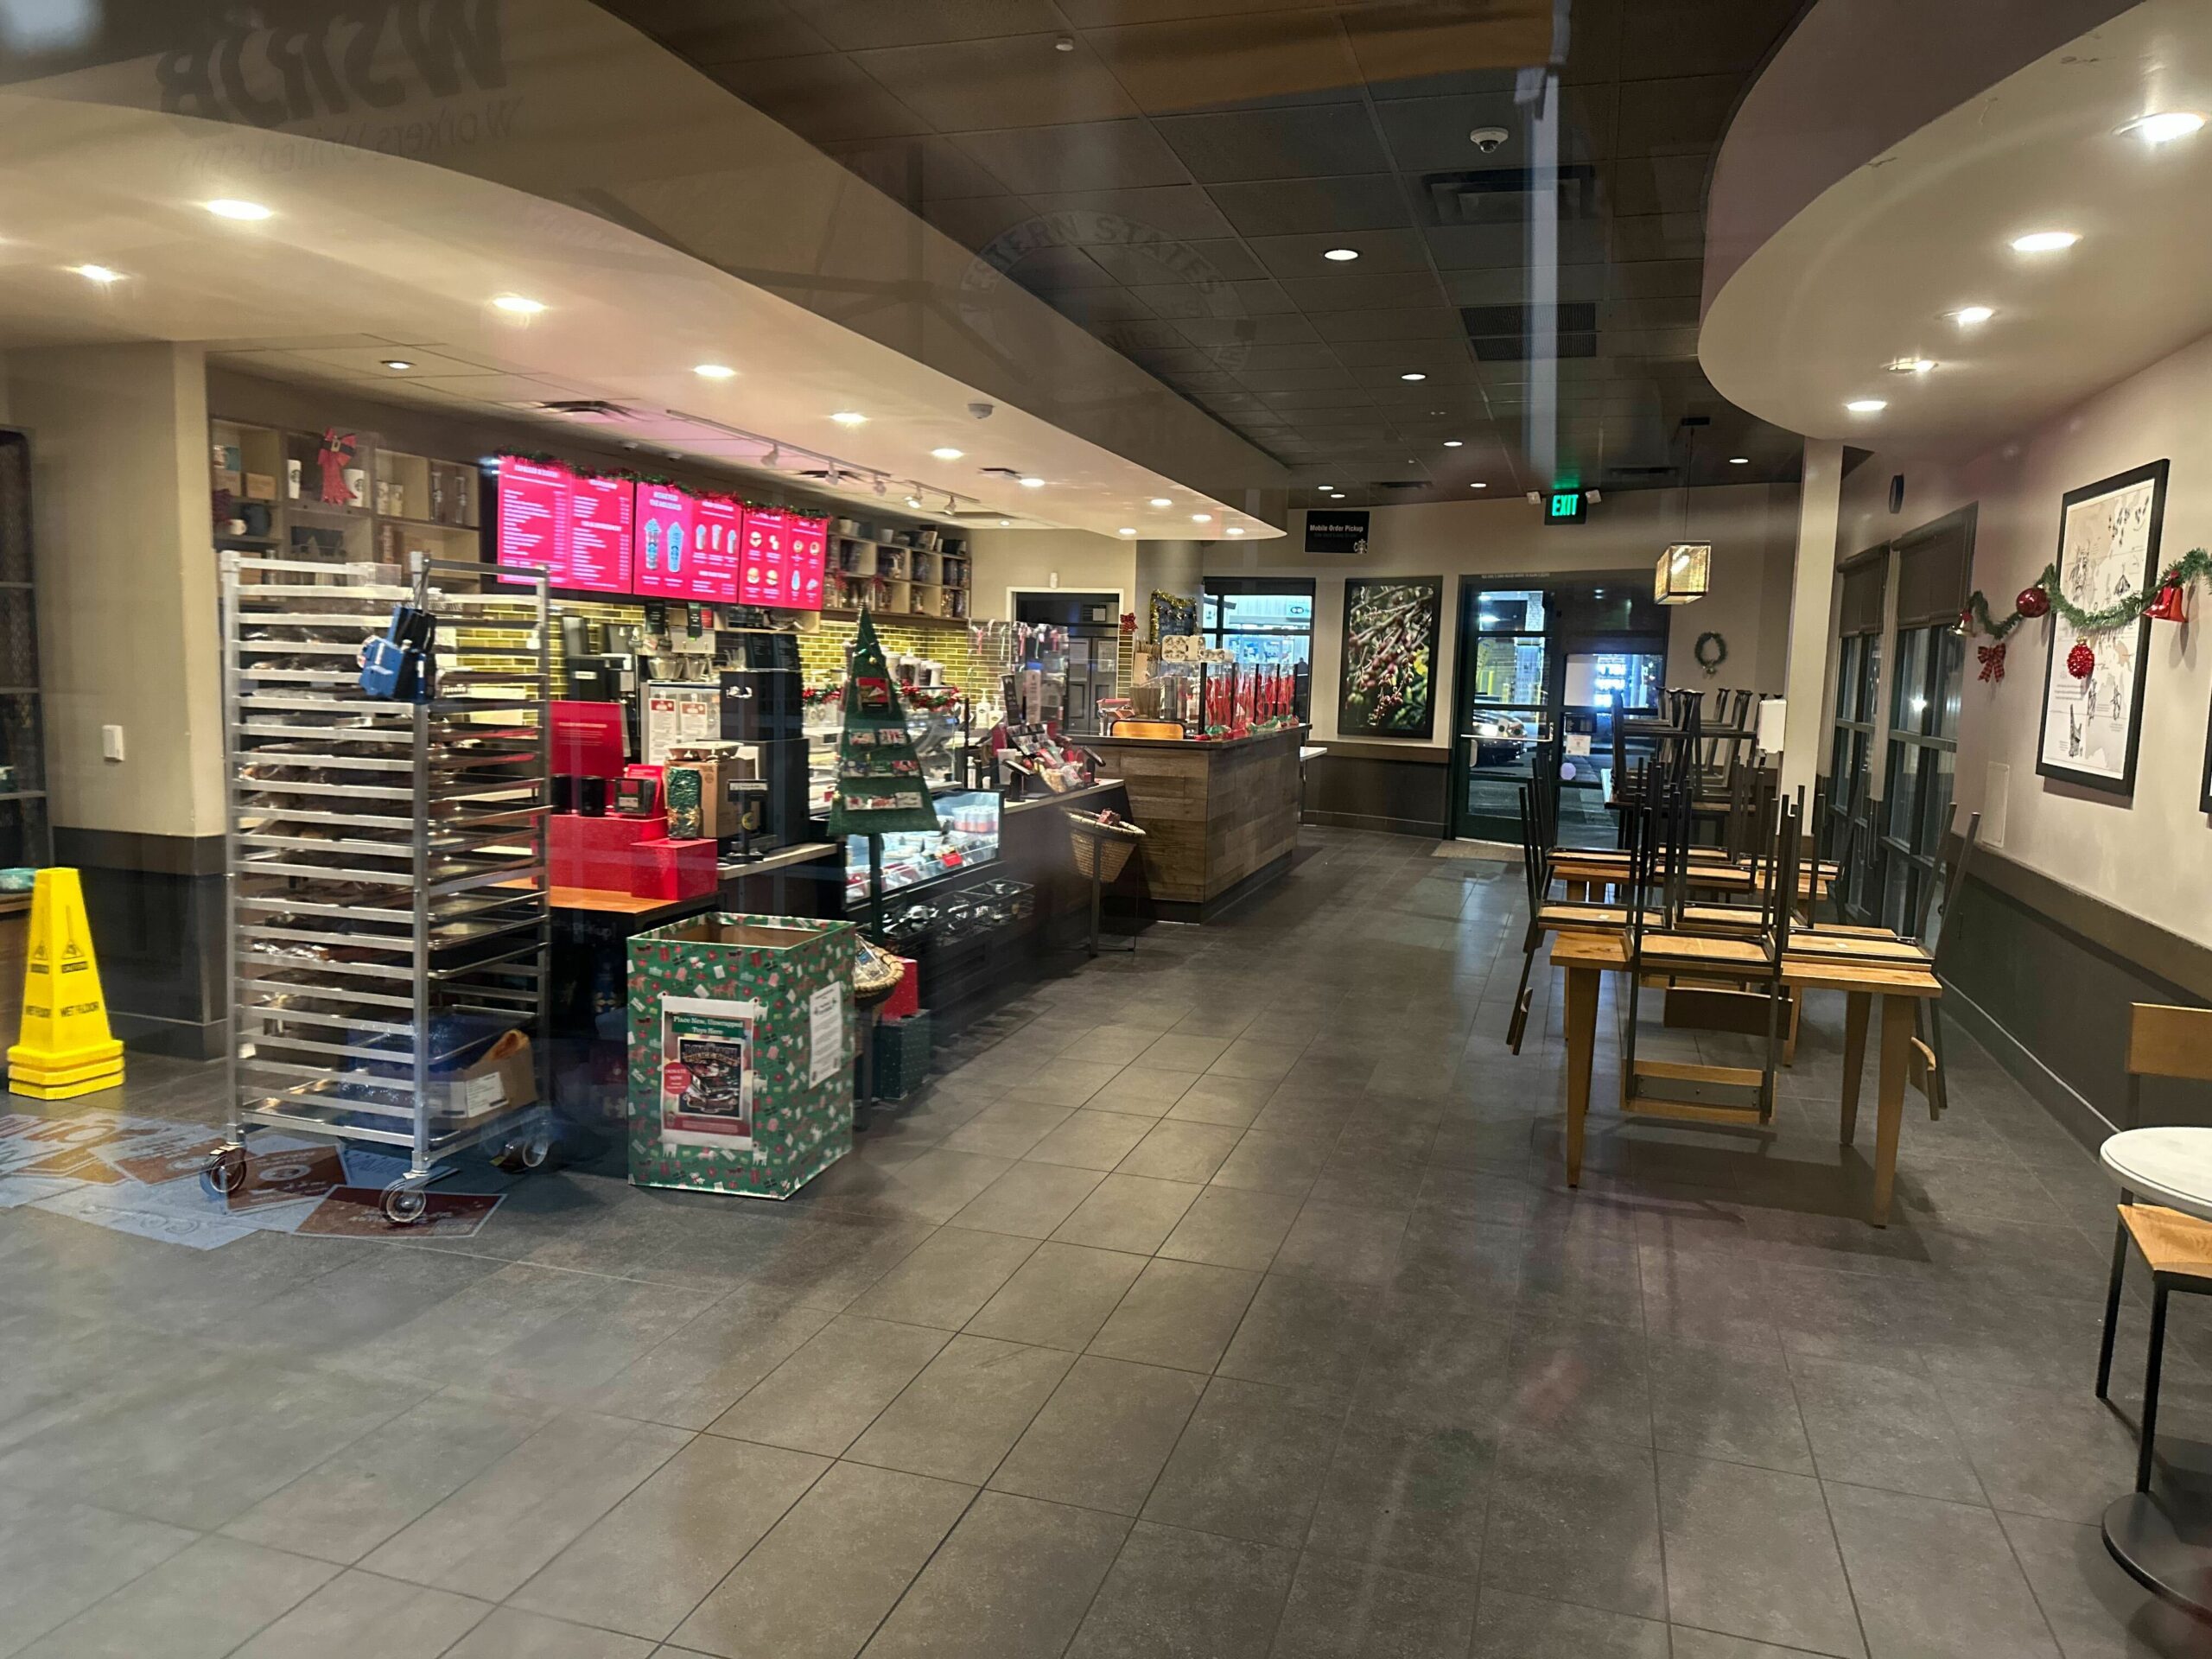 The inside of a deserted Starbucks store.